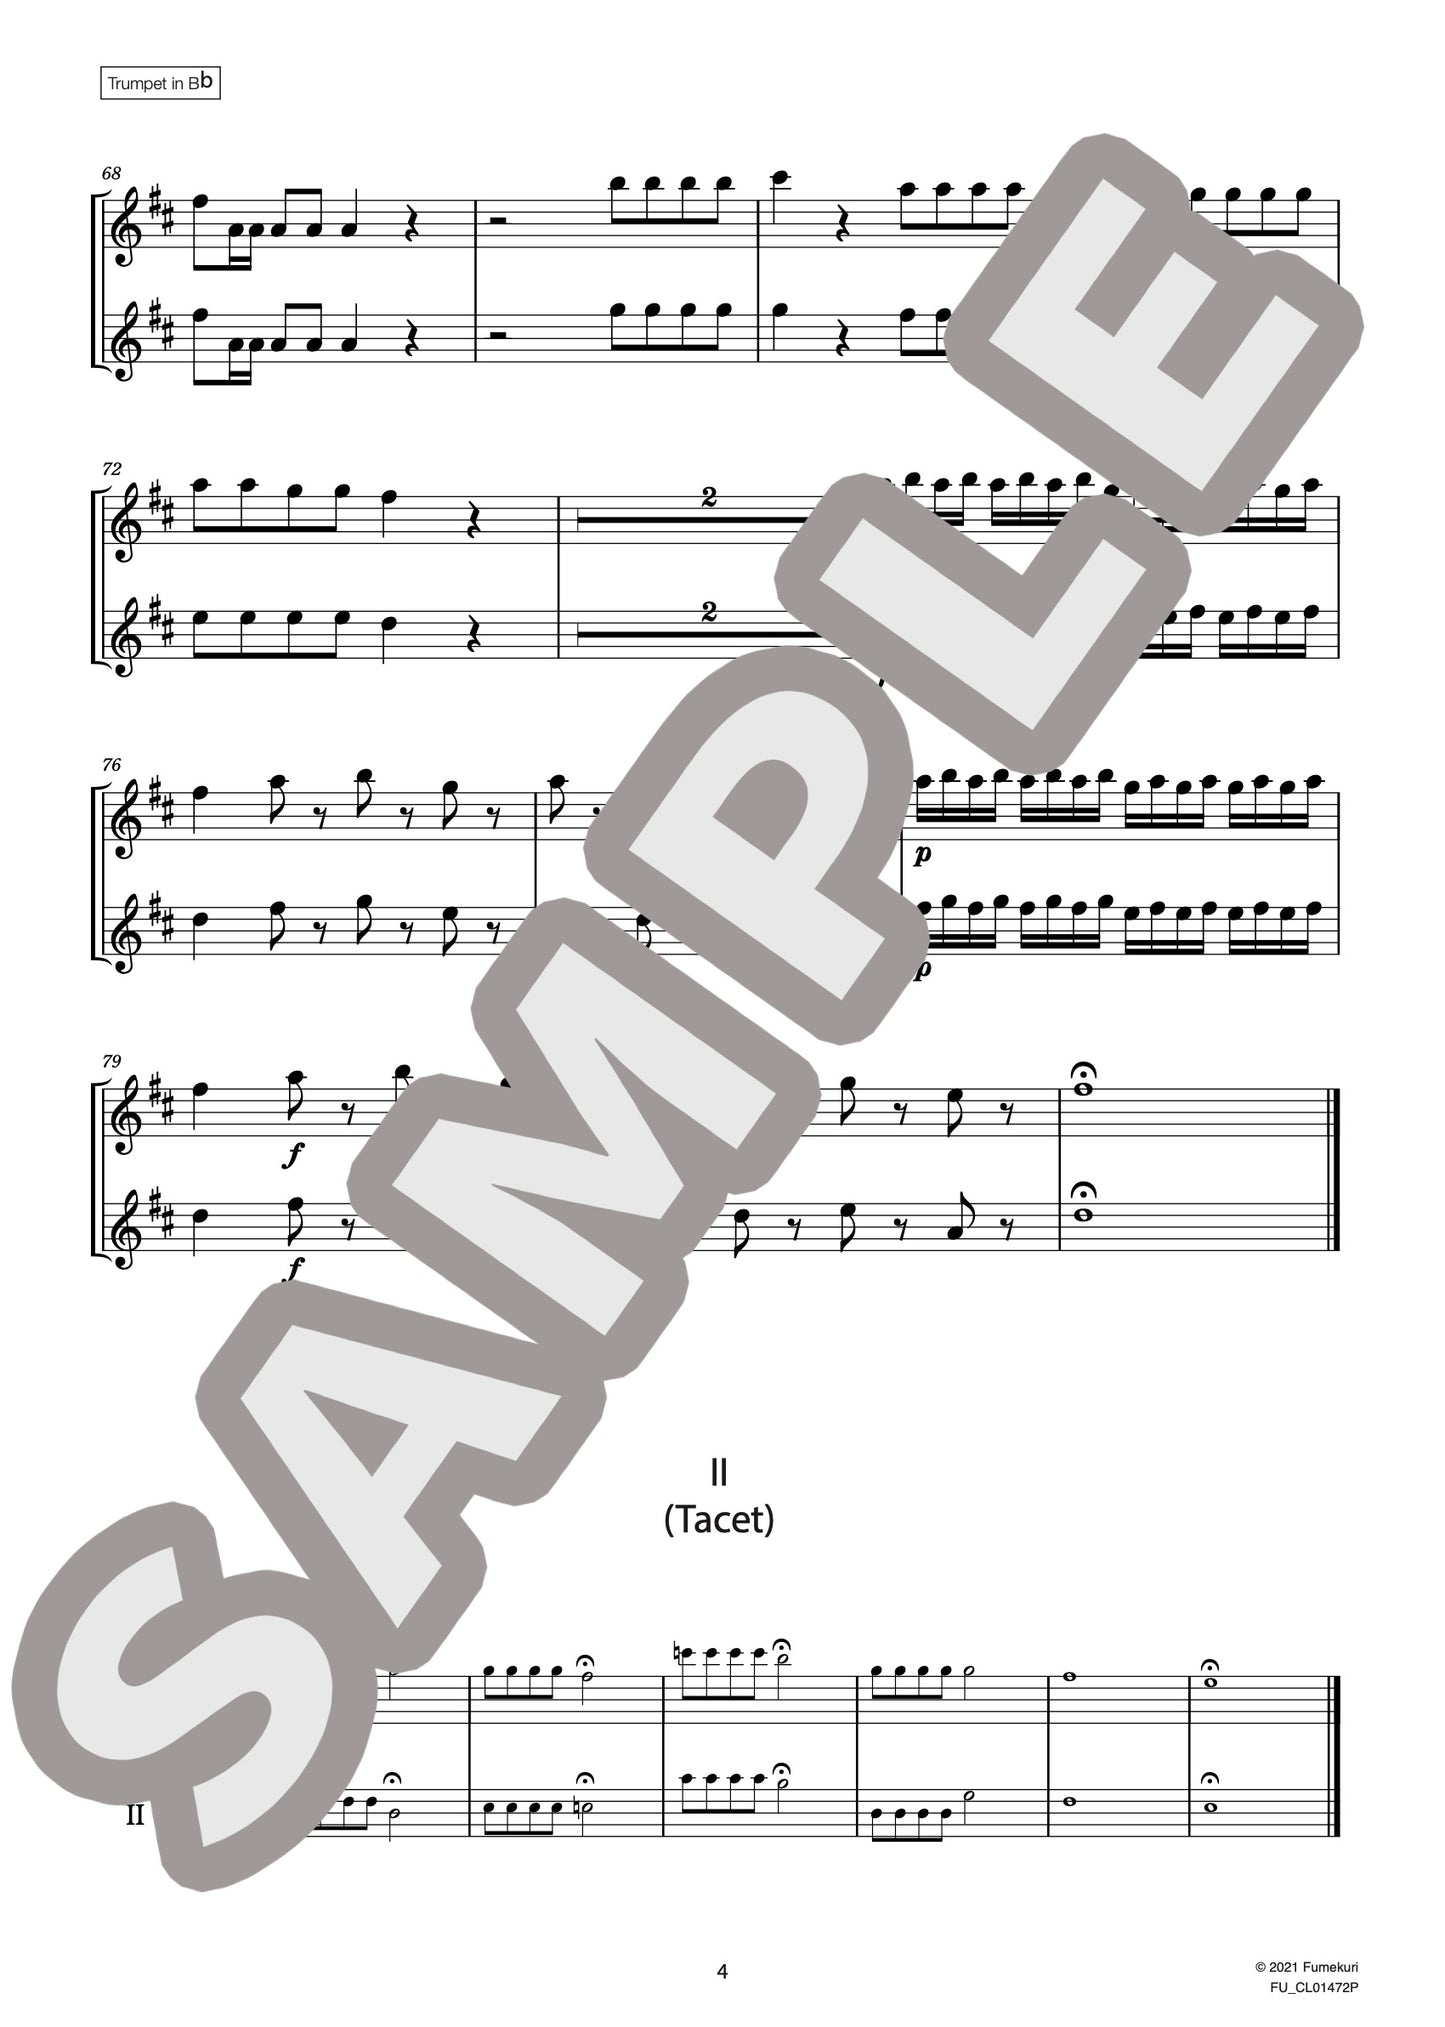 2つのトランペットのための協奏曲 ハ長調［トランペットB-flat版］（VIVALDI) / クラシック・オリジナル楽曲【中上級】